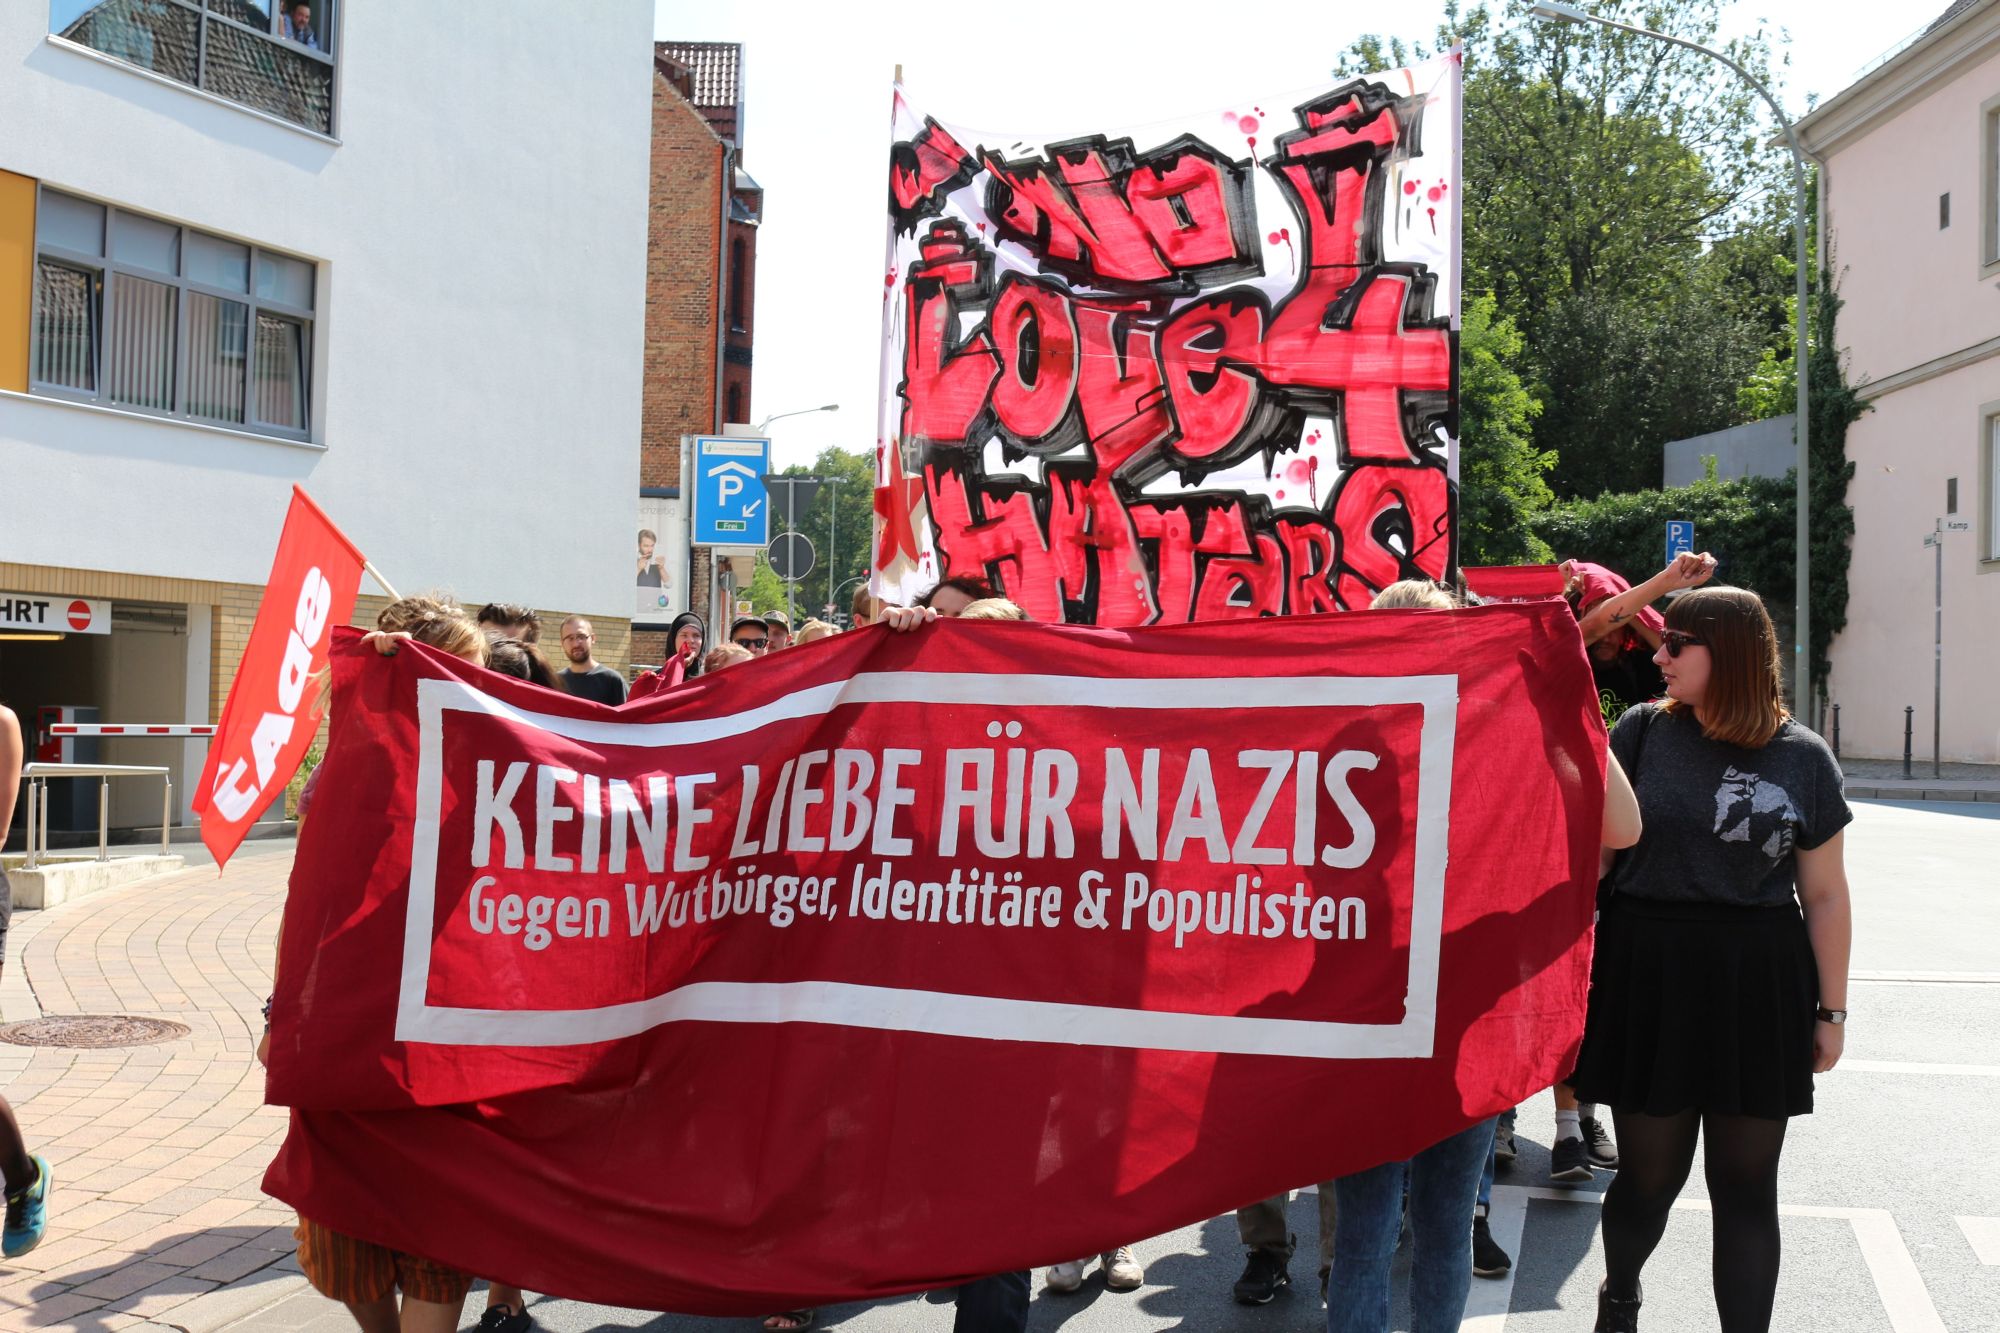 Anti-Nazis-Demo mobilisiert gegen rechtsextreme “Domstädter” und “Identitäre Bewegung”